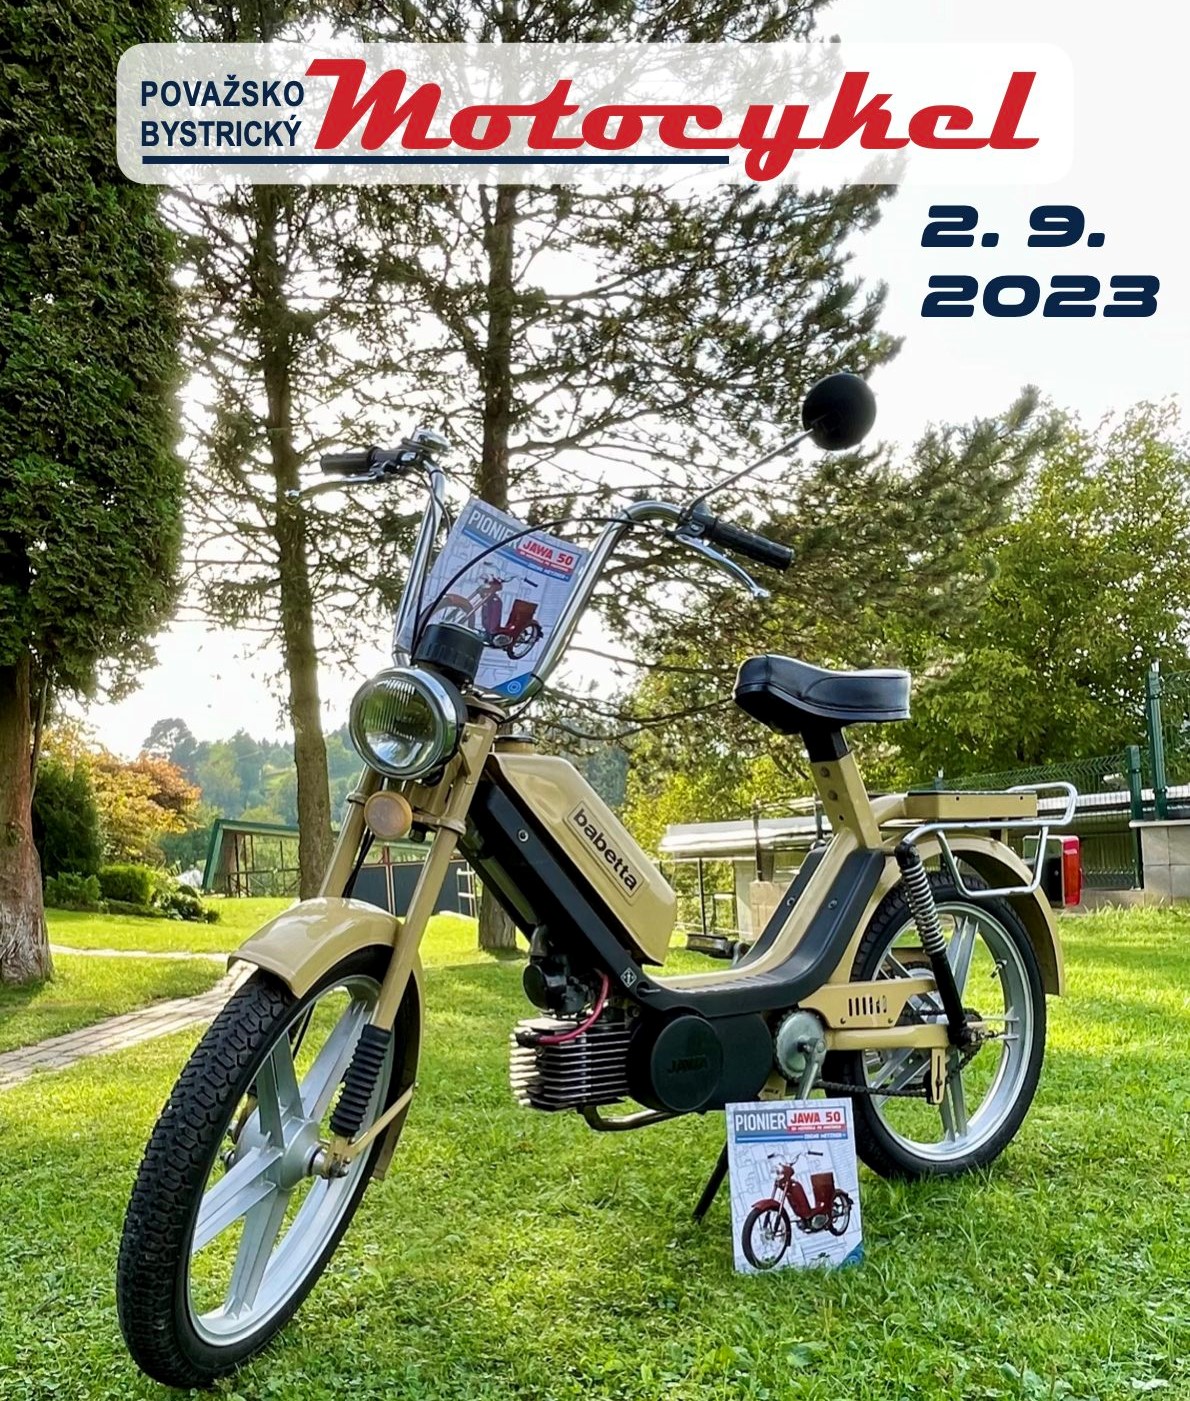 Považskobystrický motocykel 2023